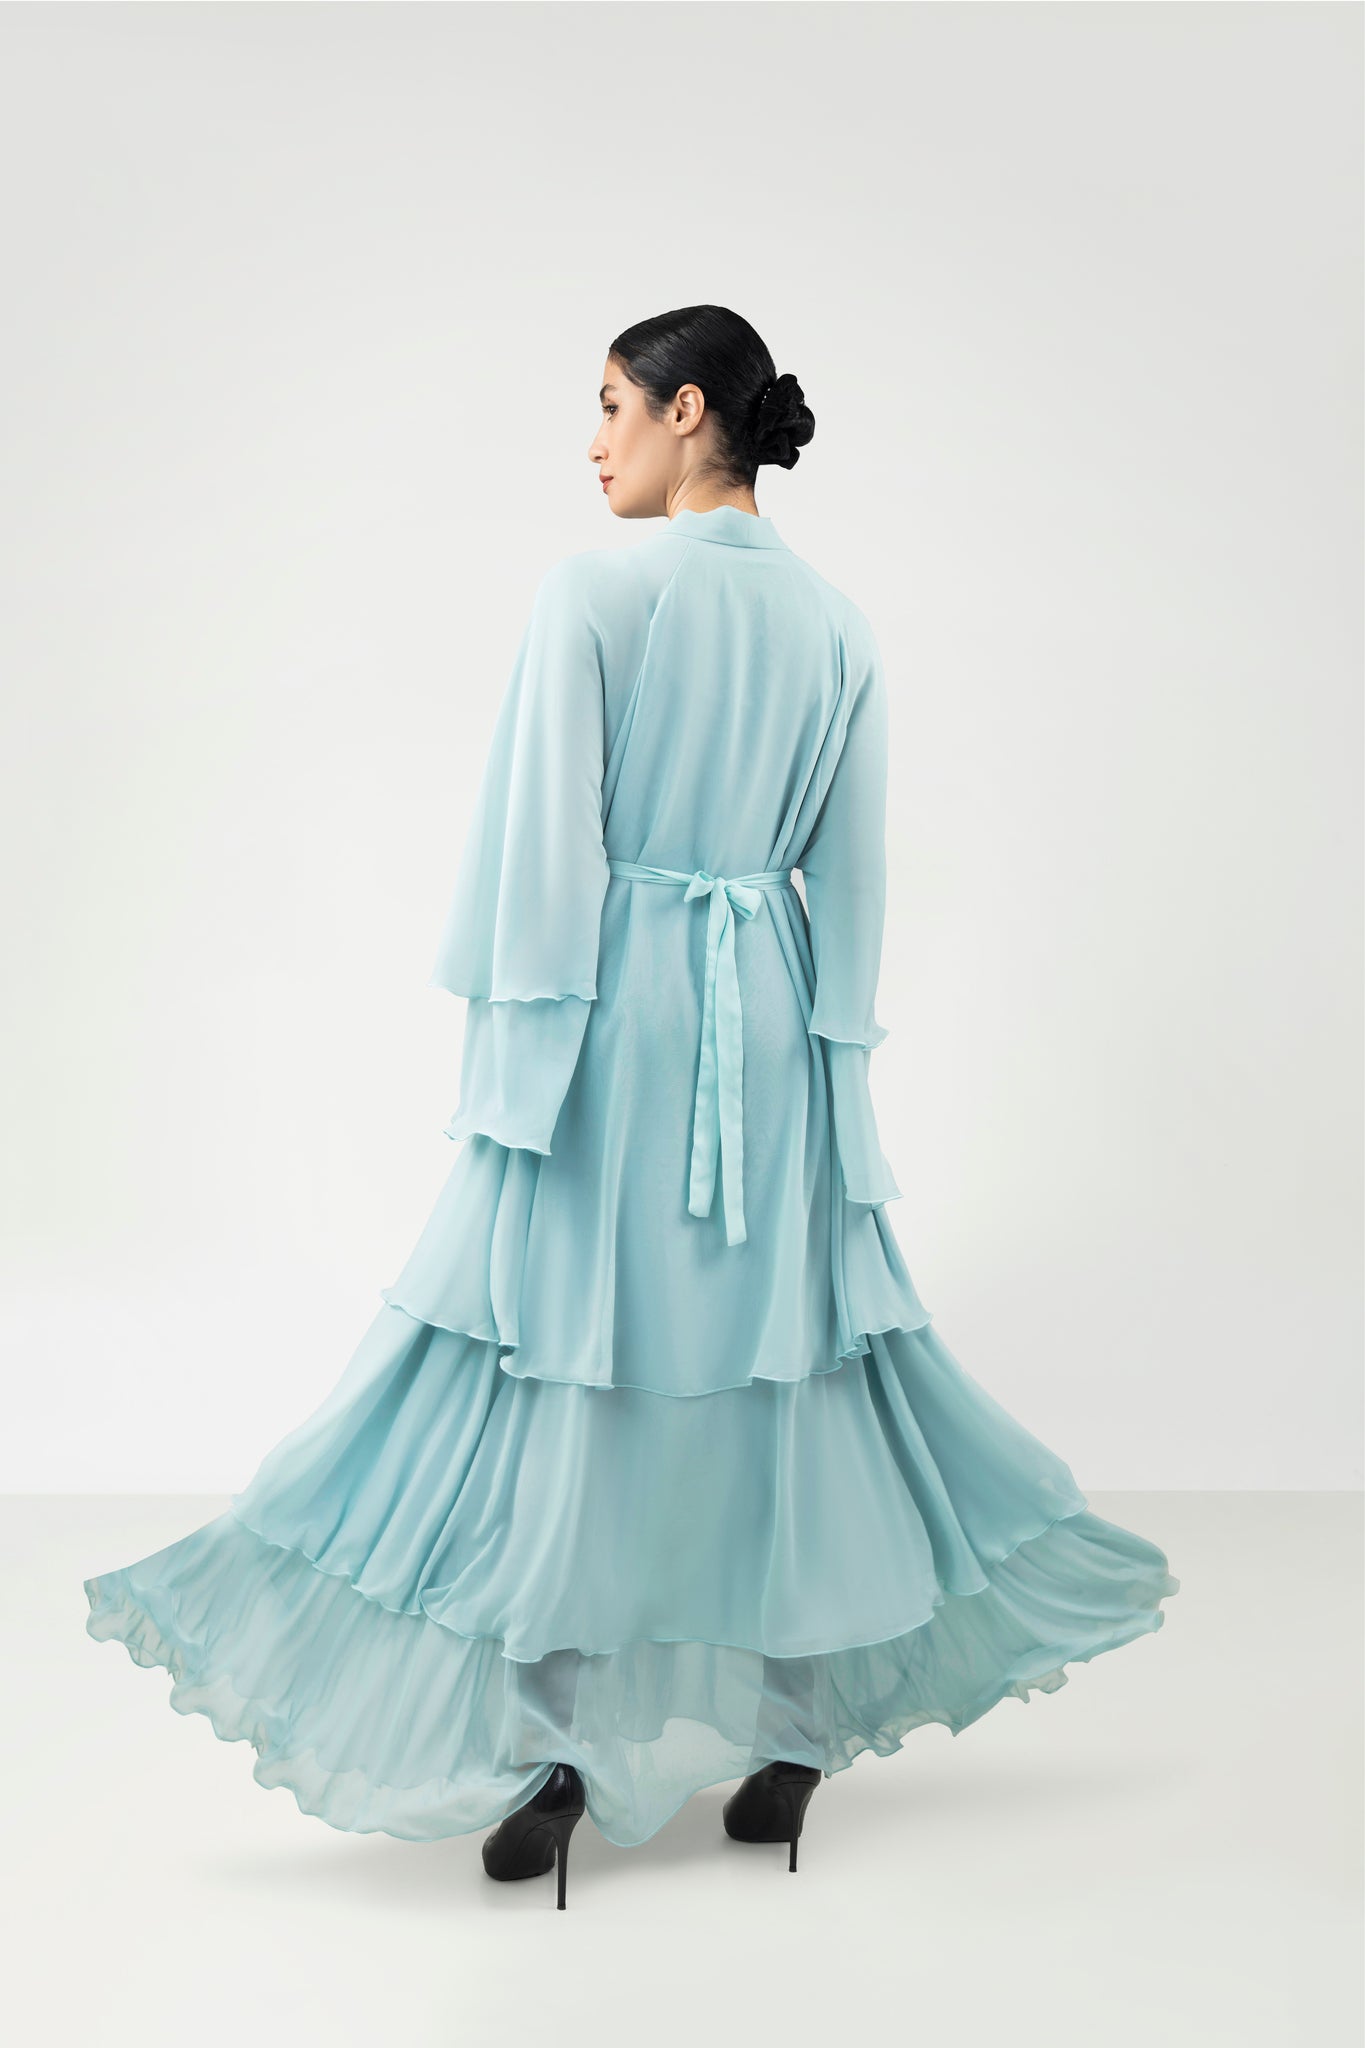 Layered Chiffon Color Abaya